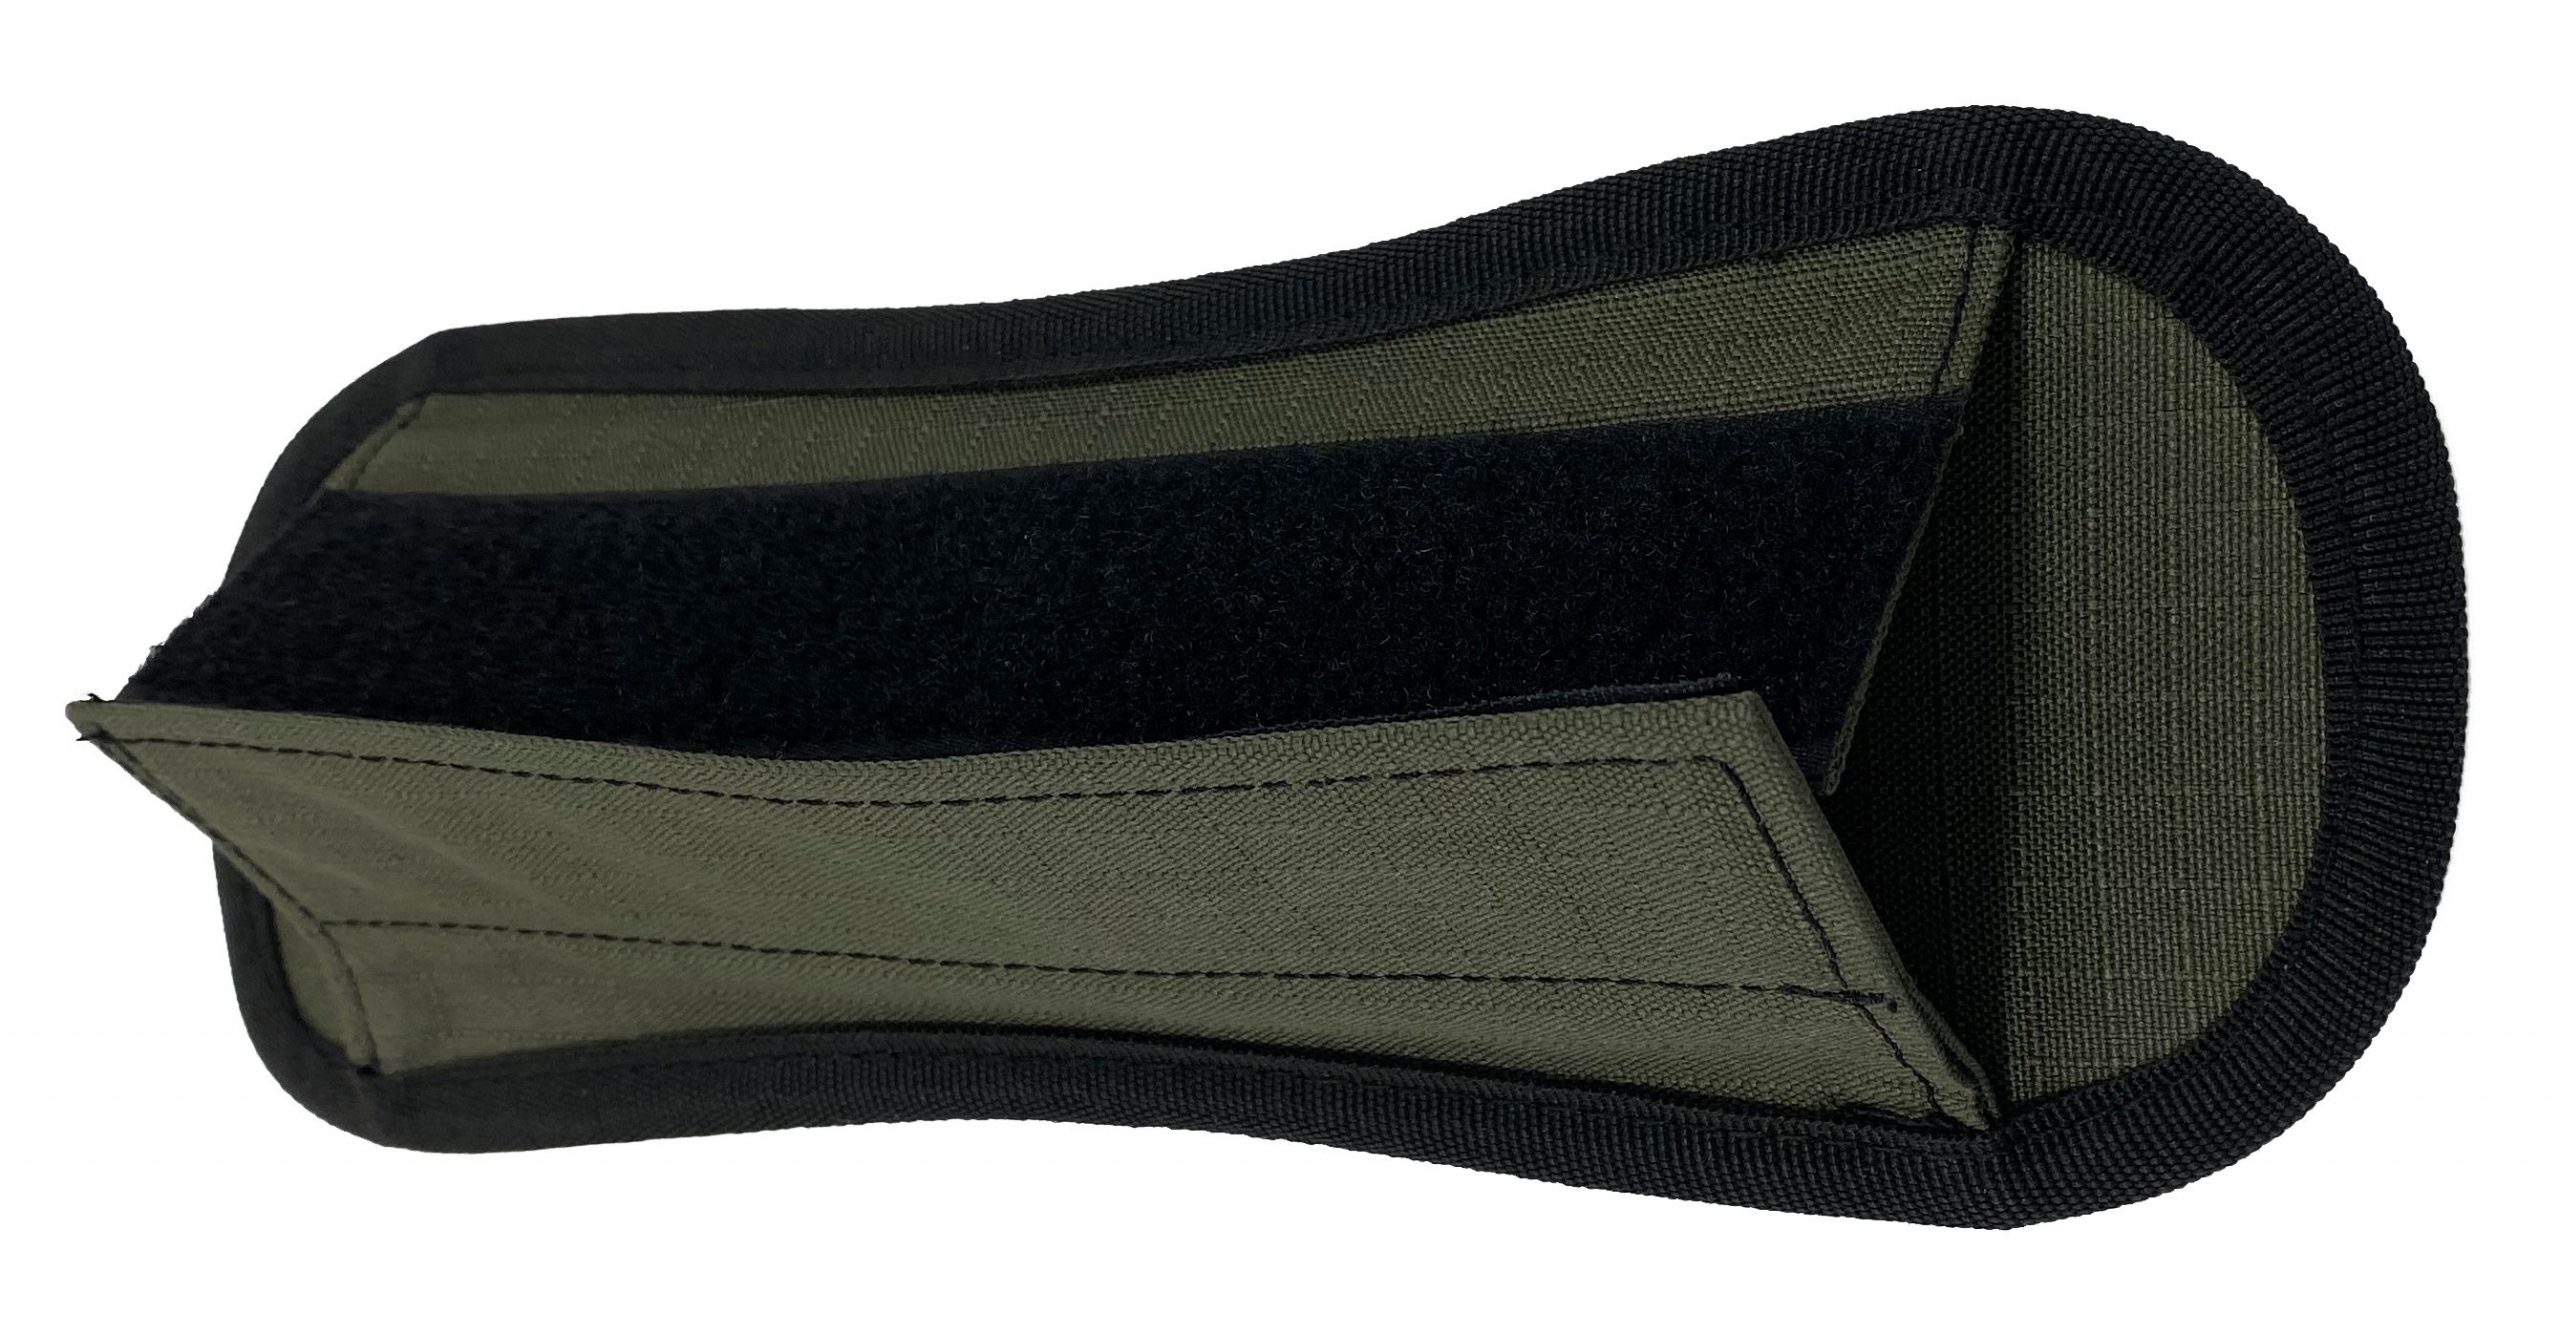 EverToner Tote Bag Shoulder Pad Goya Bags Transformation Useful Tool For  Pressure Reduction Shoulder Support Shoulder Strap Accessories